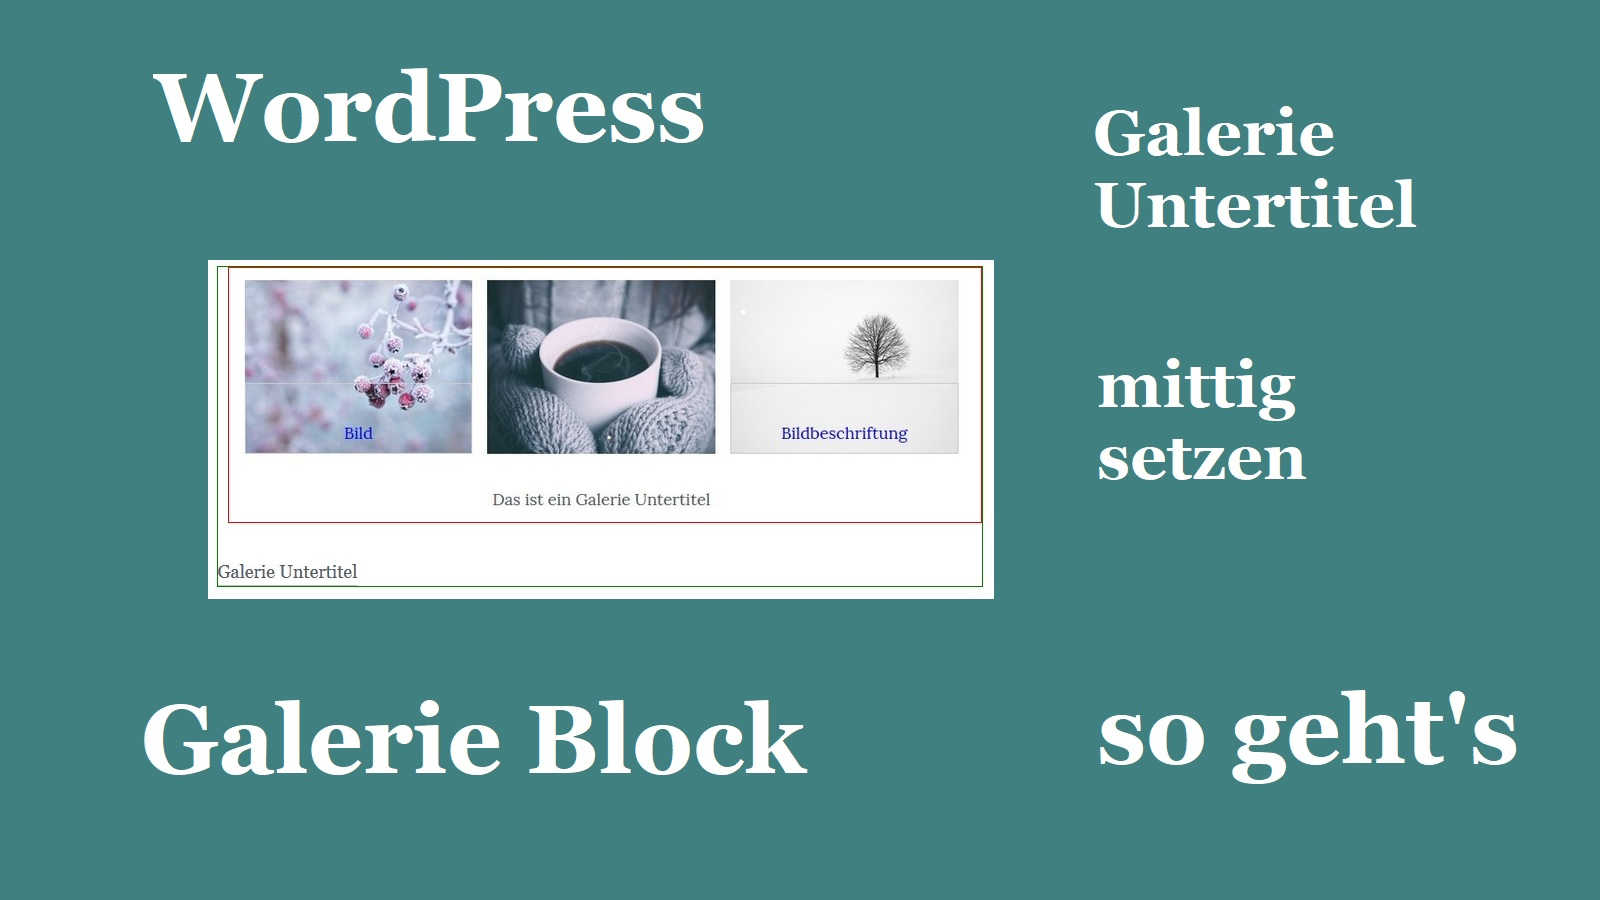 WordPress: Galerie Untertitel im Block mittig setzen – so geht’s